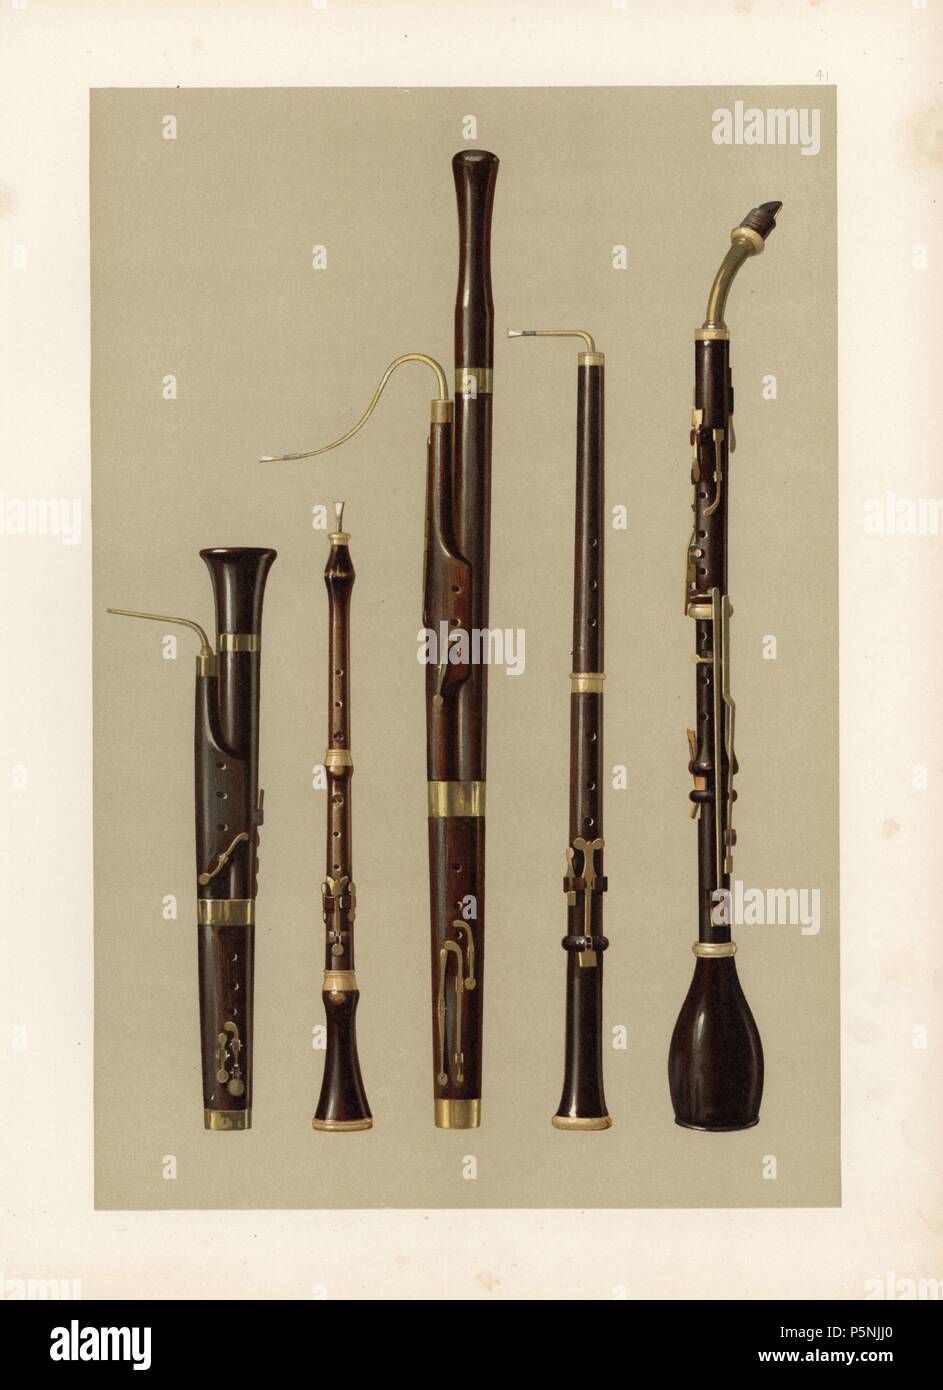 Dolciano (fagot con un único reed), oboe, fagot (desarrollado desde el bass  pommer por Afranio en Ferrara en 1539), Oboe da Caccia (fagot planteó un  cuarto de tono) y basset horn (alto